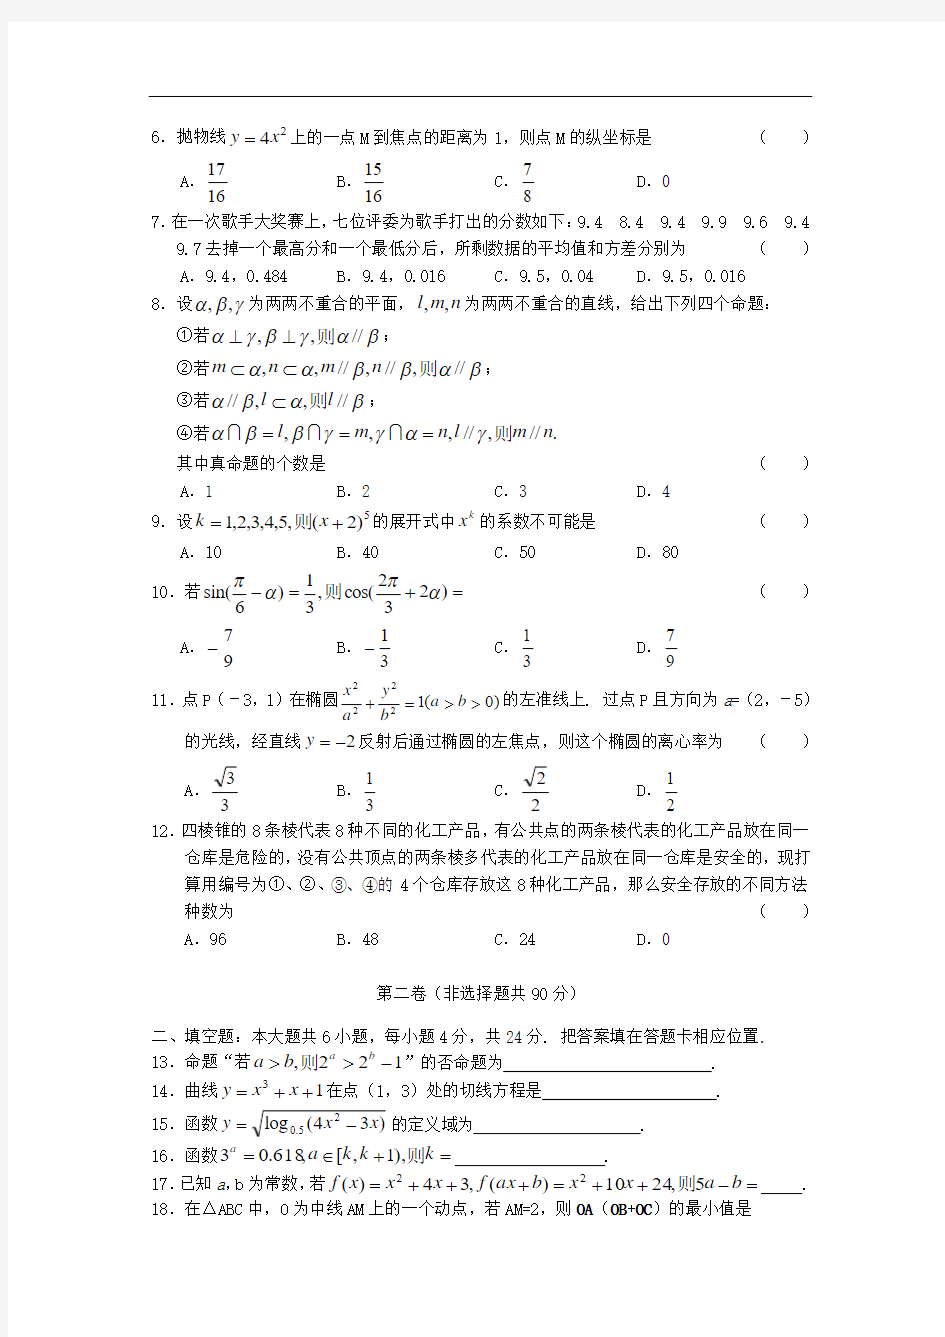 2005年高考试题——数学( 江 苏卷)